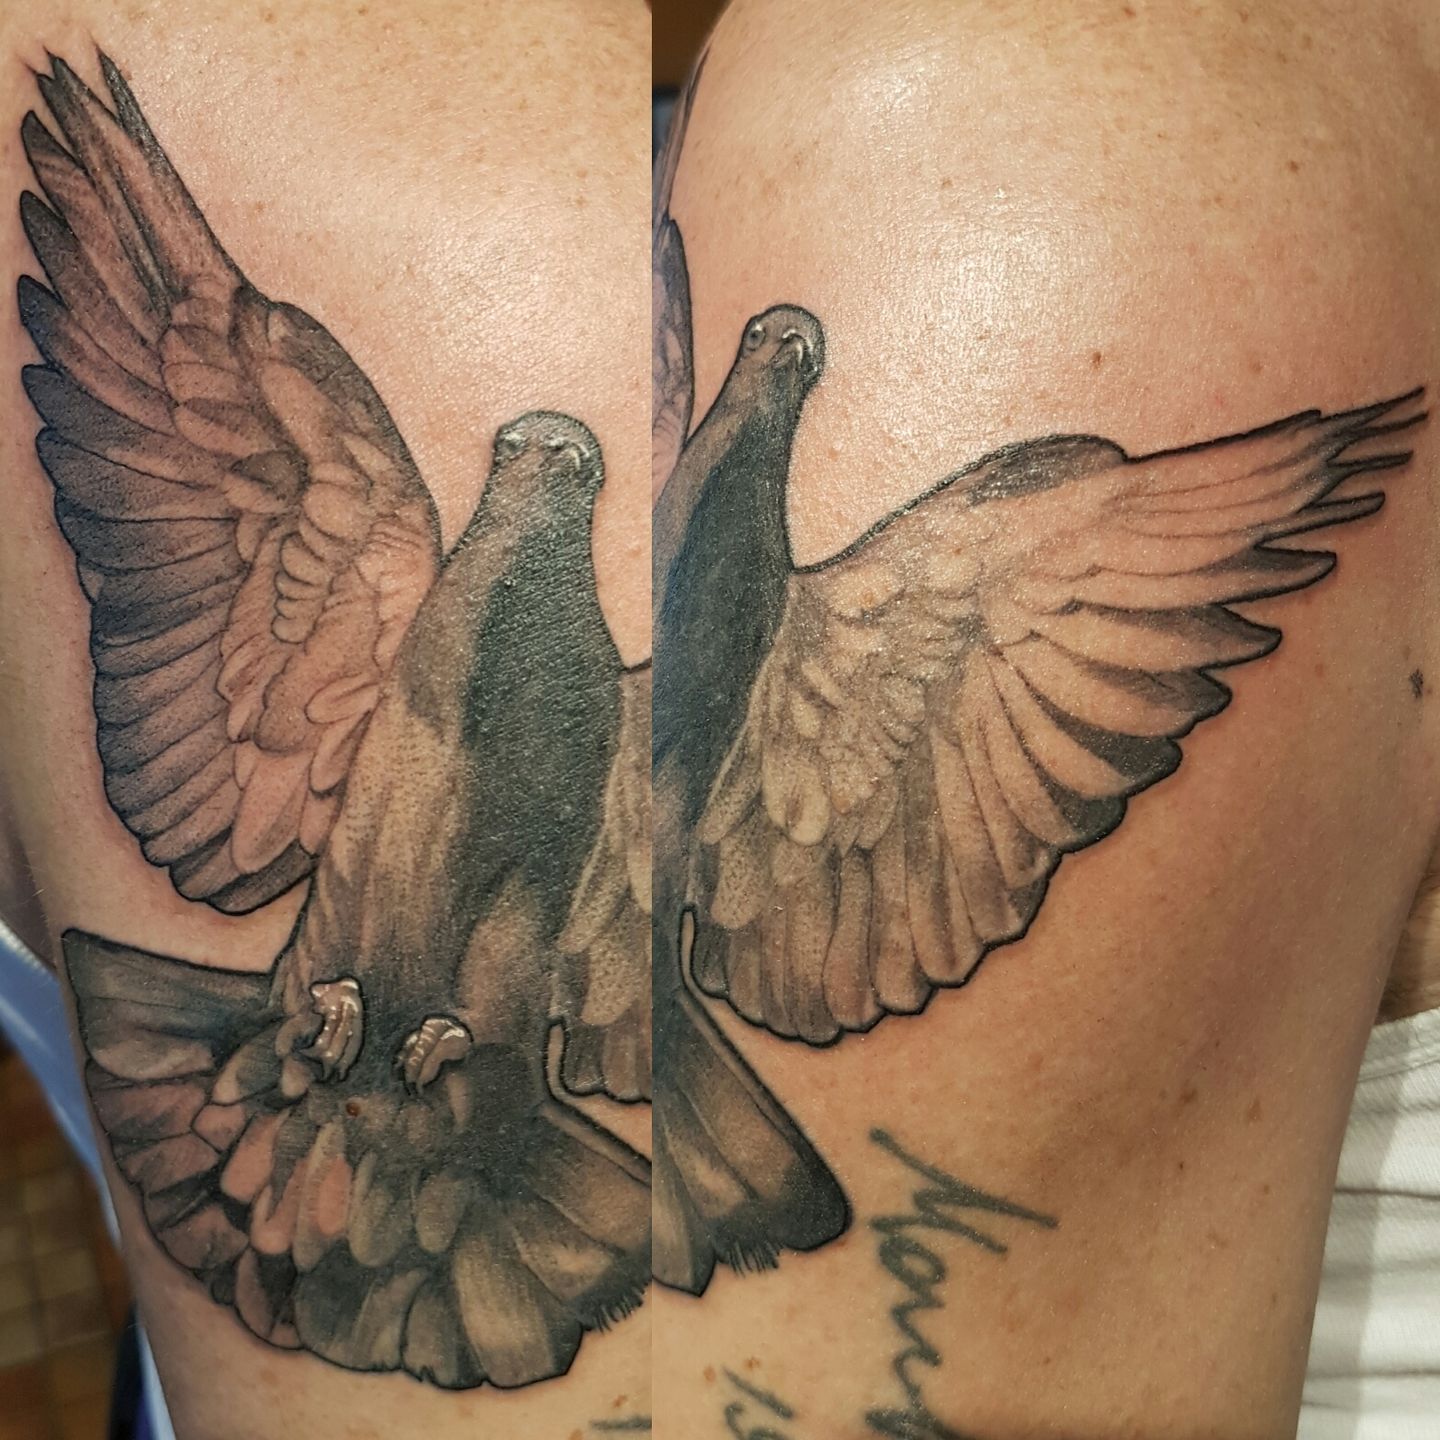 Mambo Tattooer pigeon bird tattoo | Pigeon tattoo, Cool tattoos, Tattoos